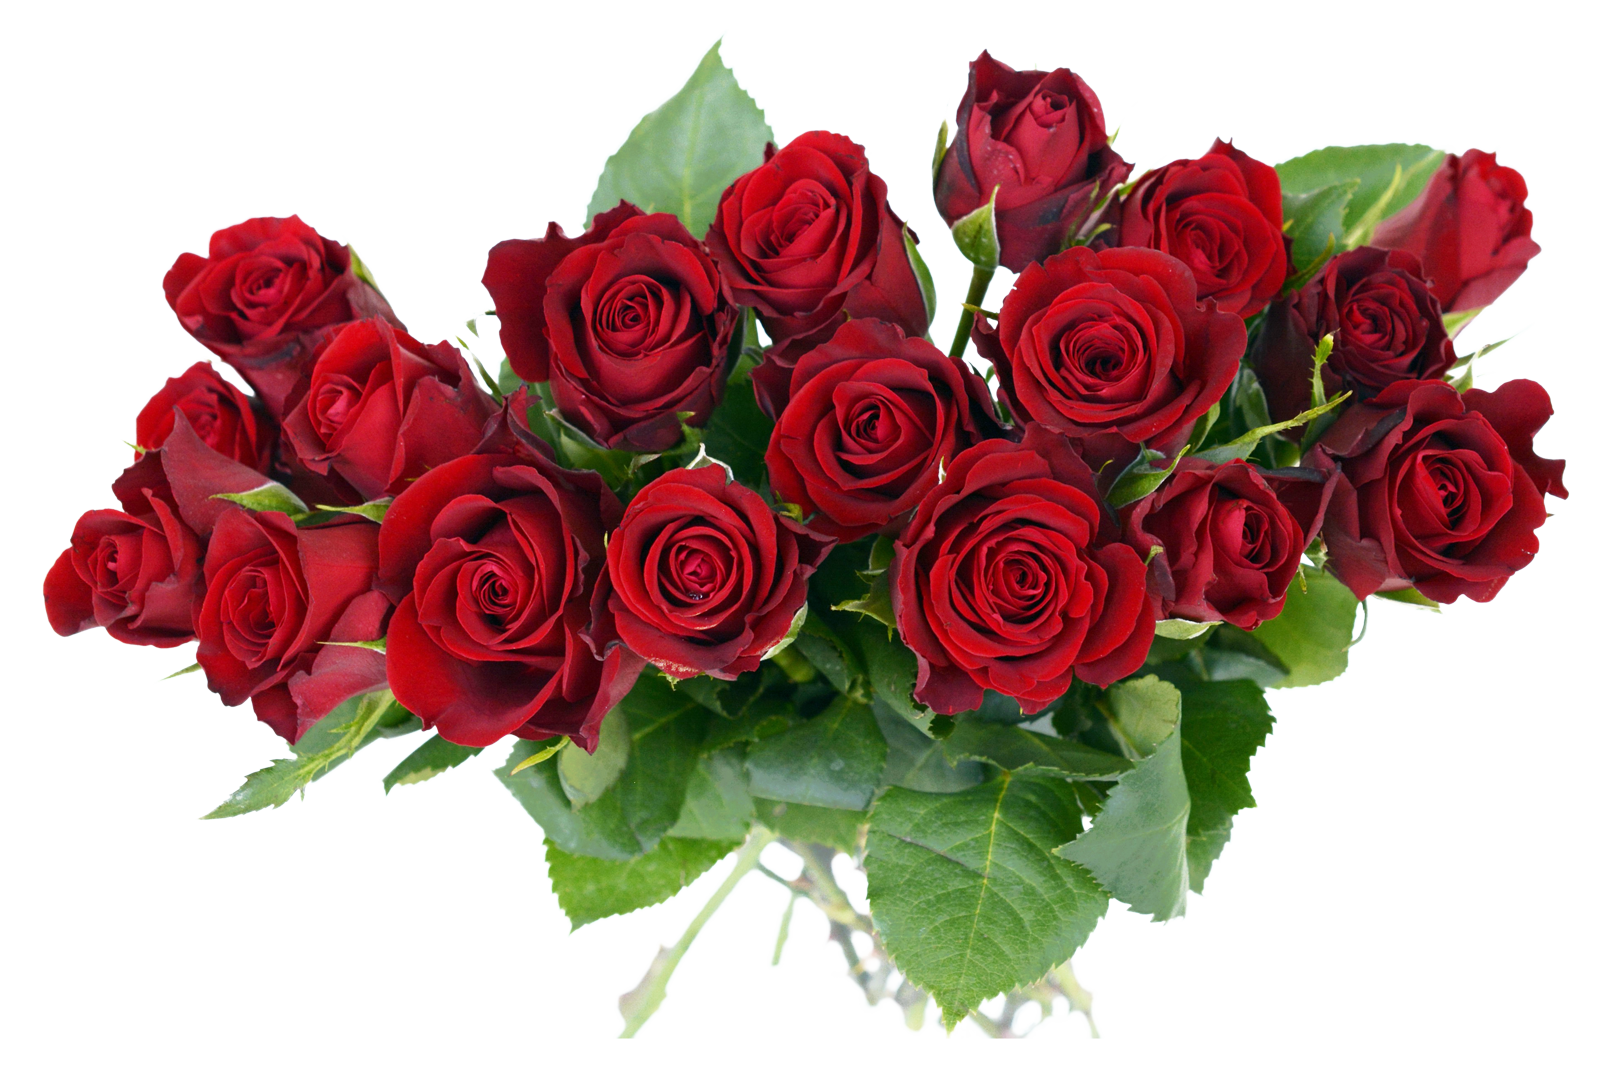 Rose Bouquet PNG Image - PurePNG | Free transparent CC0 ...